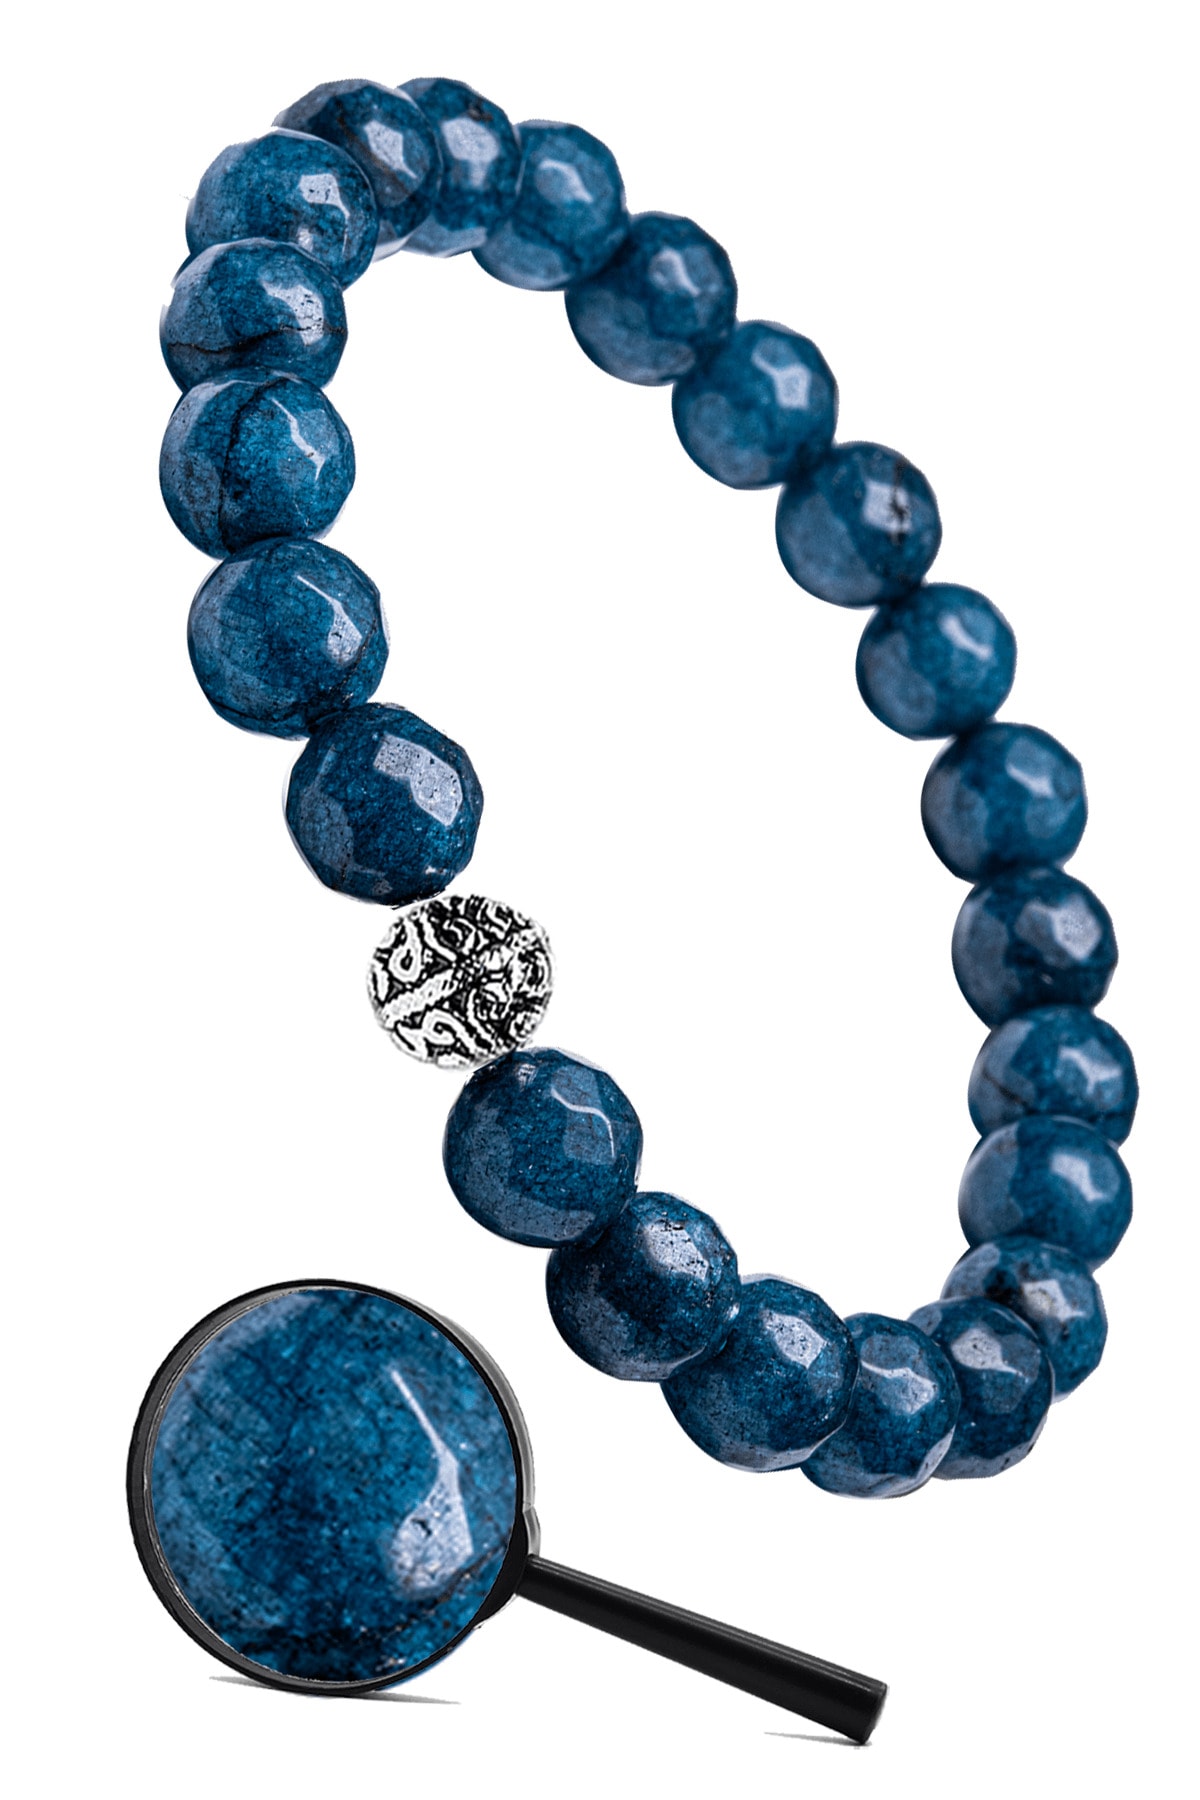 Tesbih Atölyesi Sertifikalı Gümüş Aparatlı Fasetli Doğal Mavi Akik Taşı Bileklik